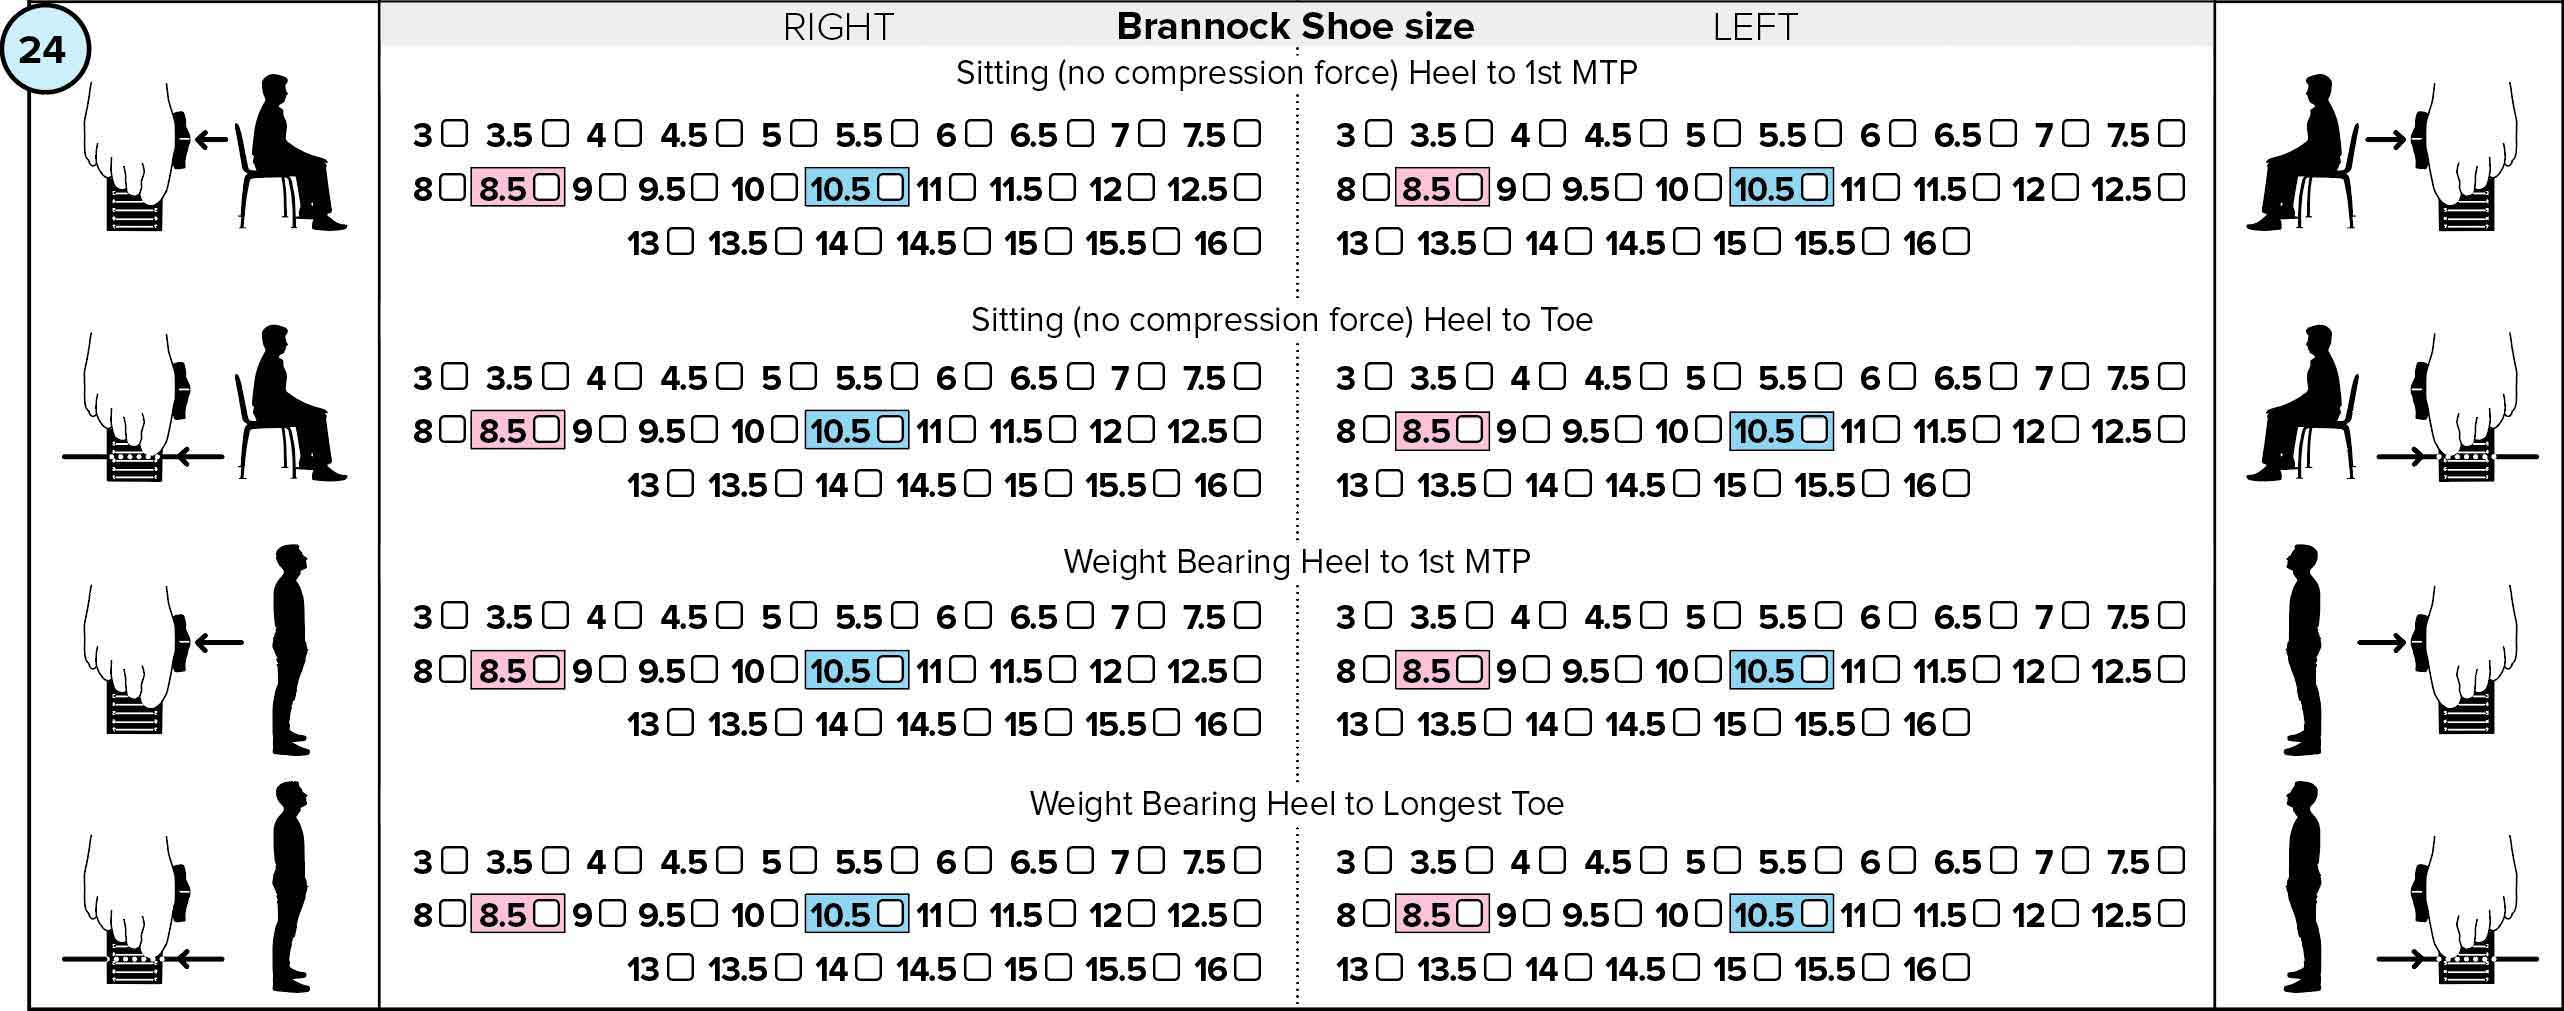 Brannock Shoe size